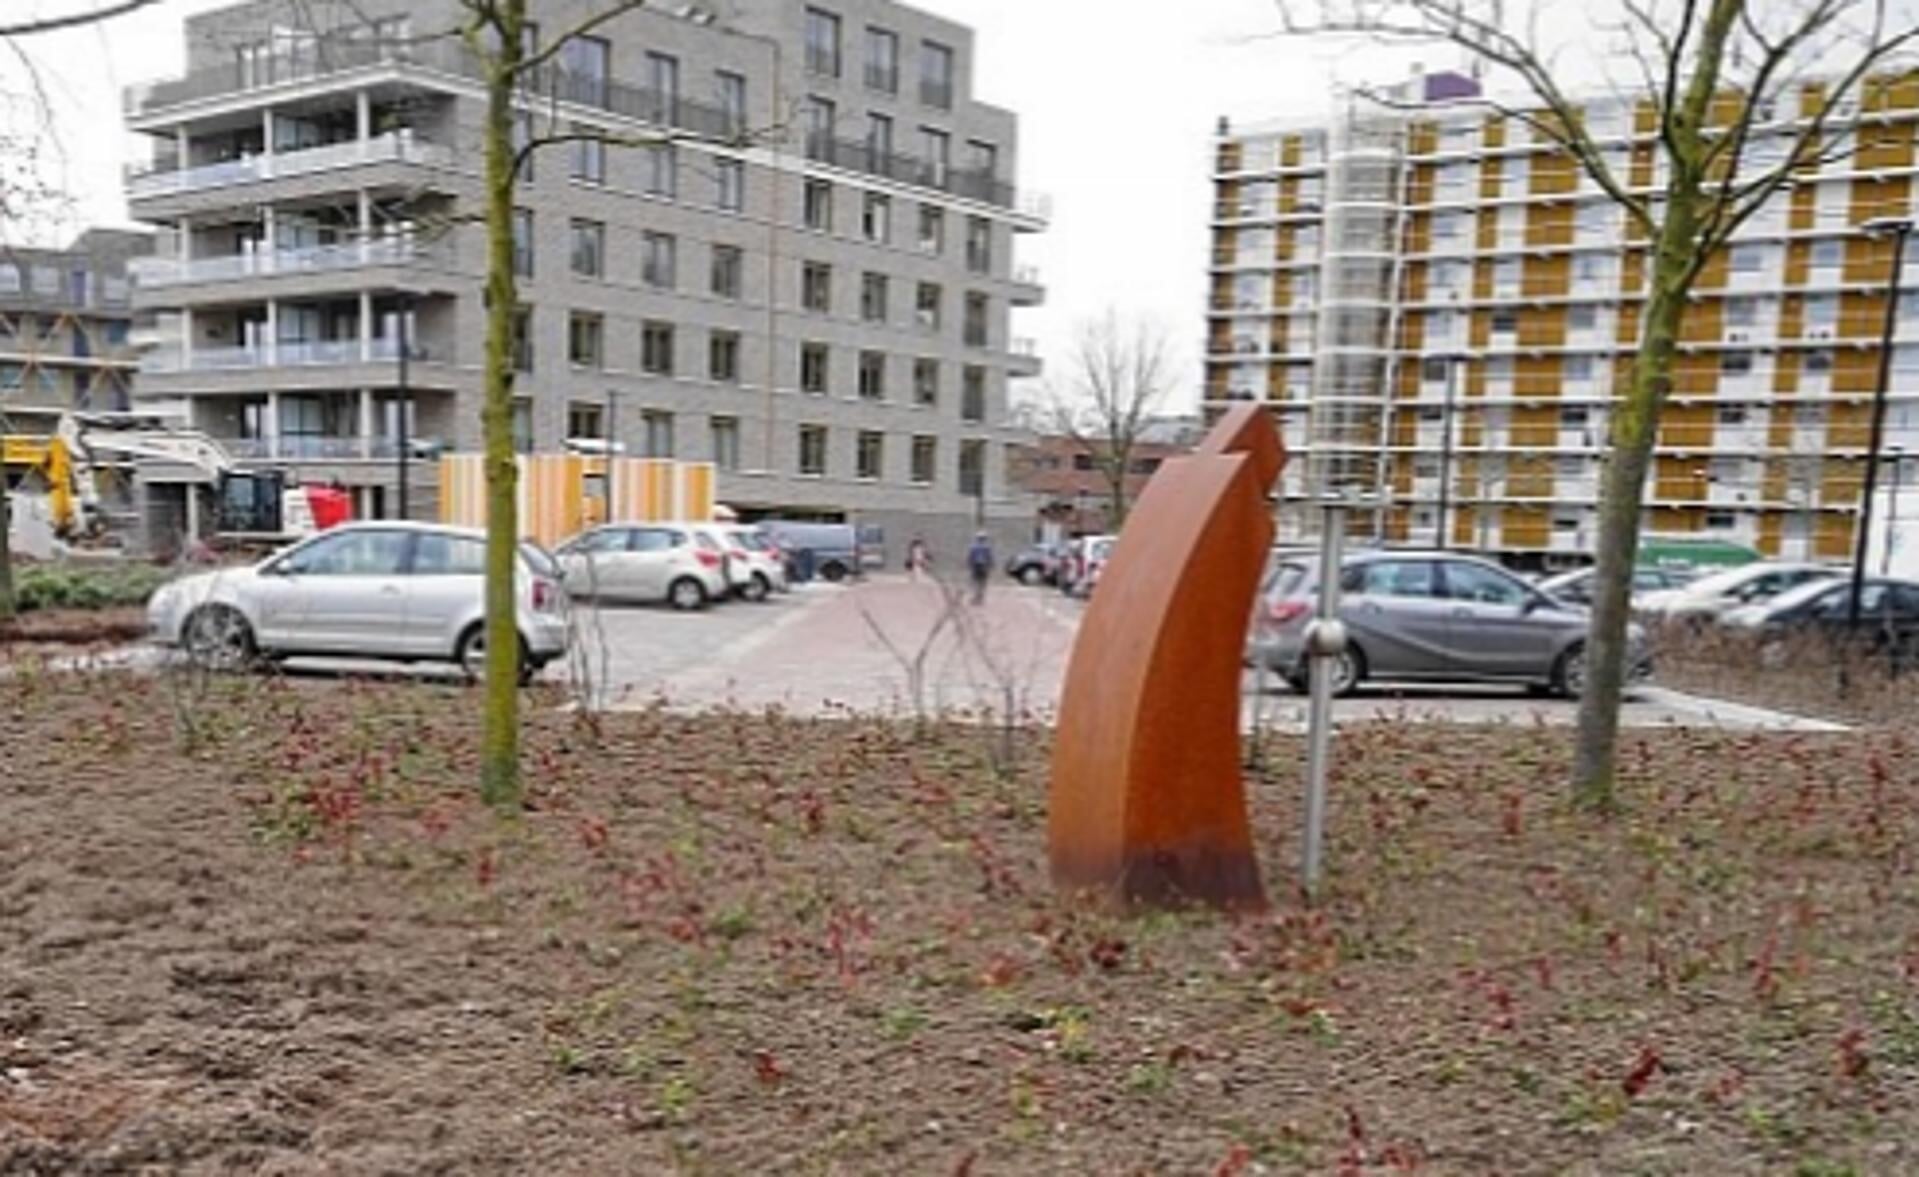 Het in 2013 onthulde kunstwerk Beeld op Hendrik Verhees van Marten Groen wordt sinds kort omgeven door struikjes.